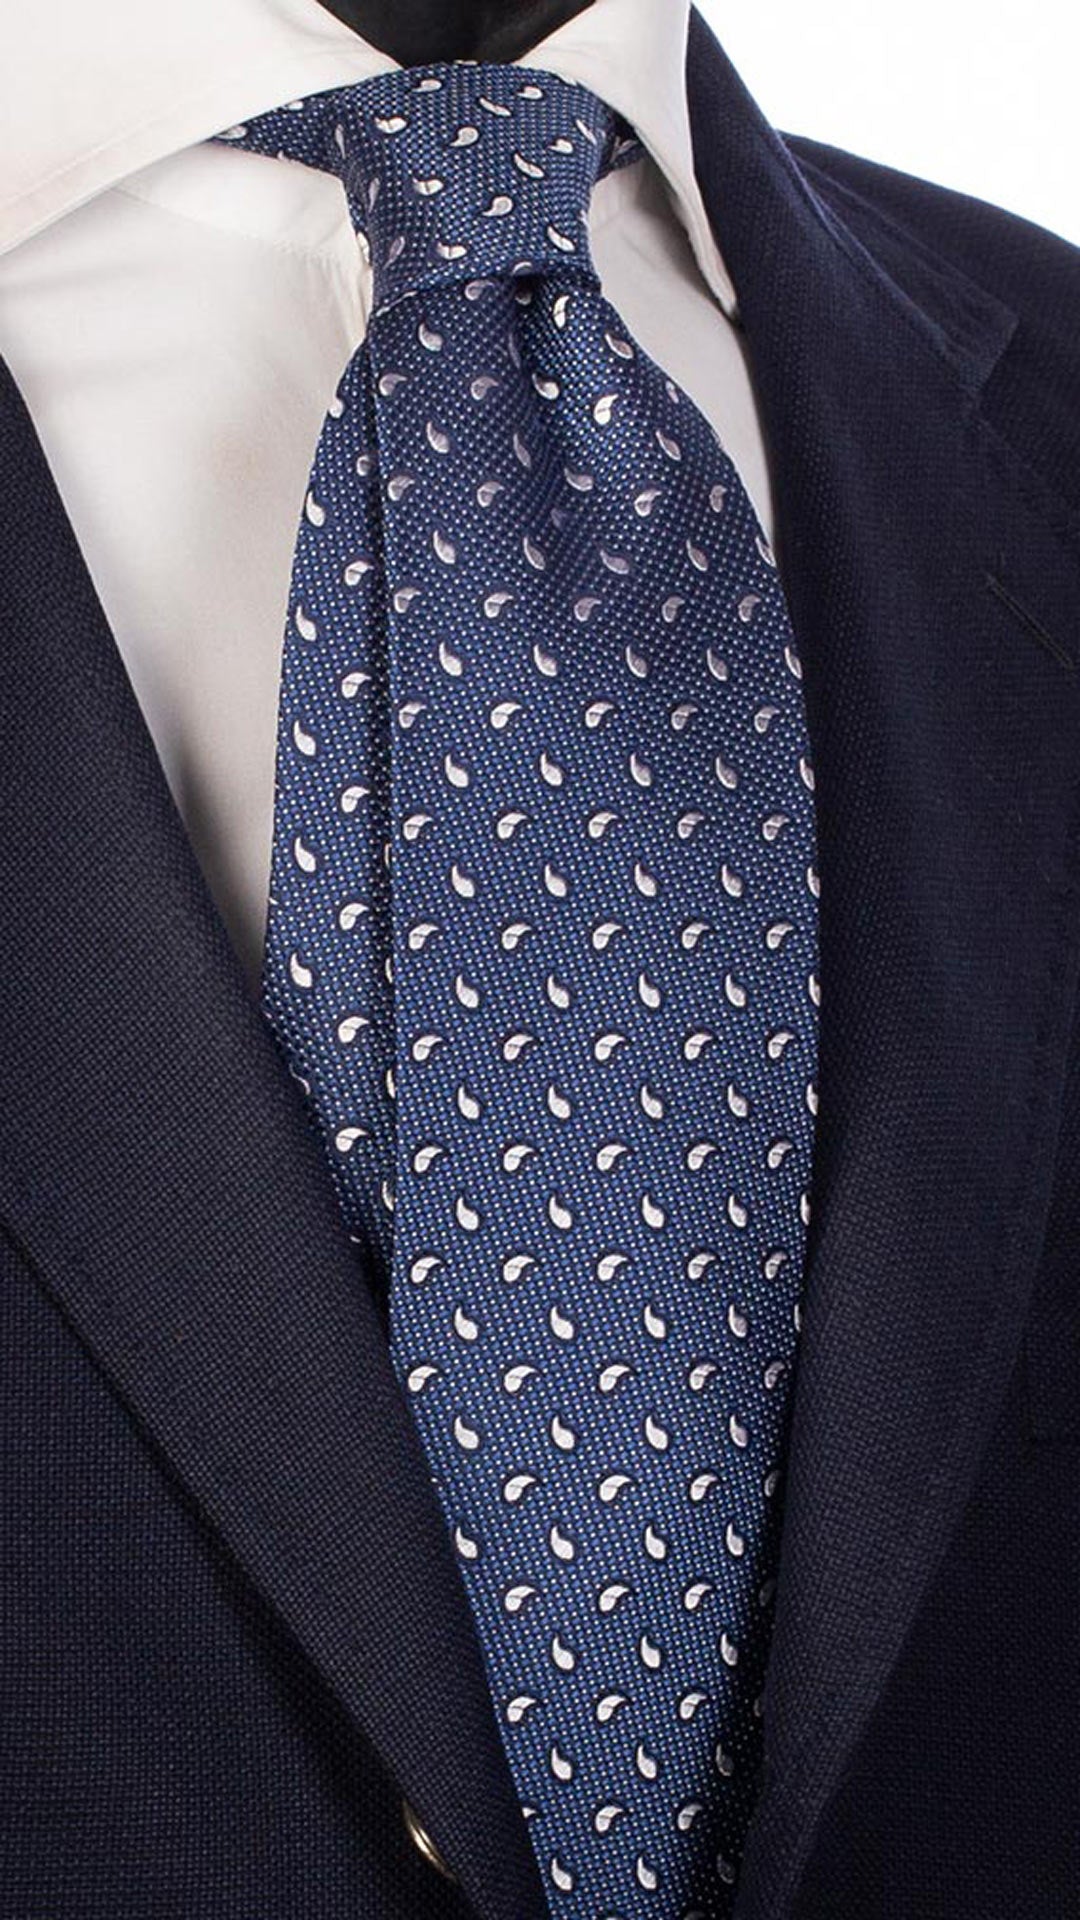 Cravatta da Cerimonia di Seta Blu Navy Paisley Punto a Spillo Bianco CY4697 Made in Italy Graffeo Cravatte